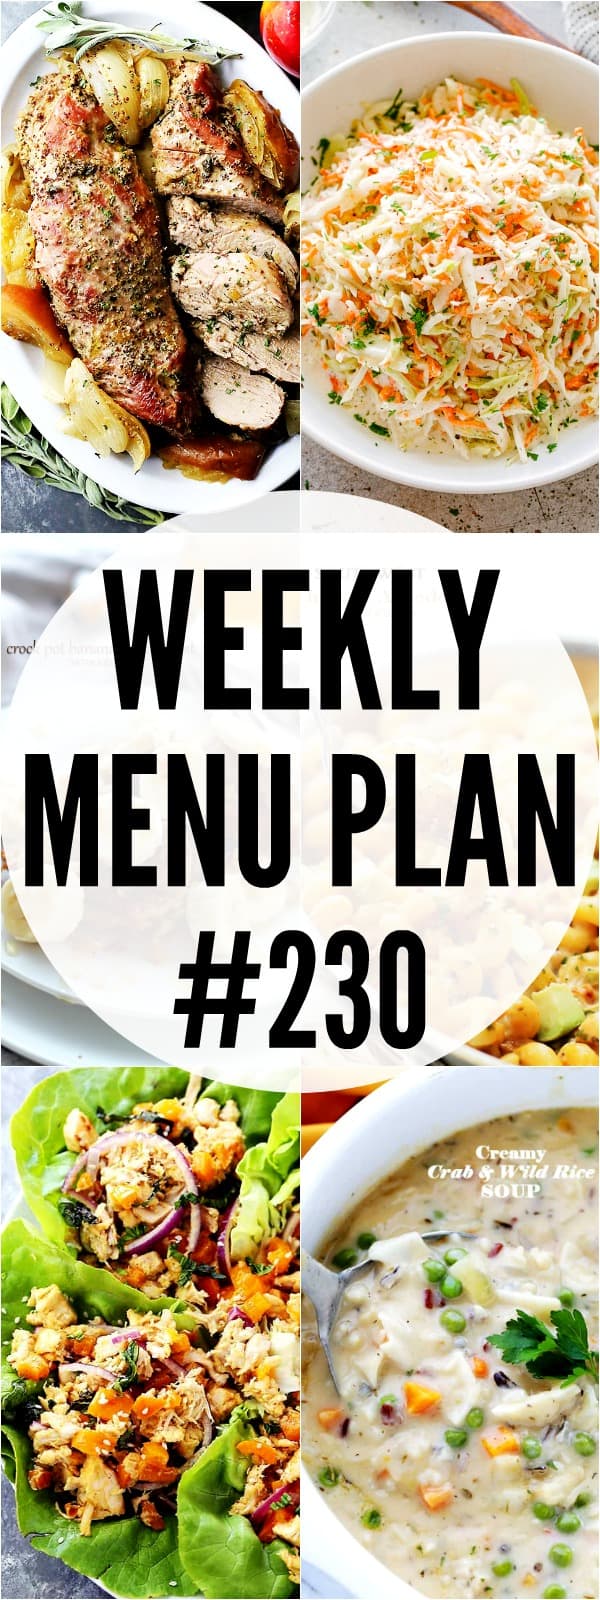 weekly menu plan 230 pin image